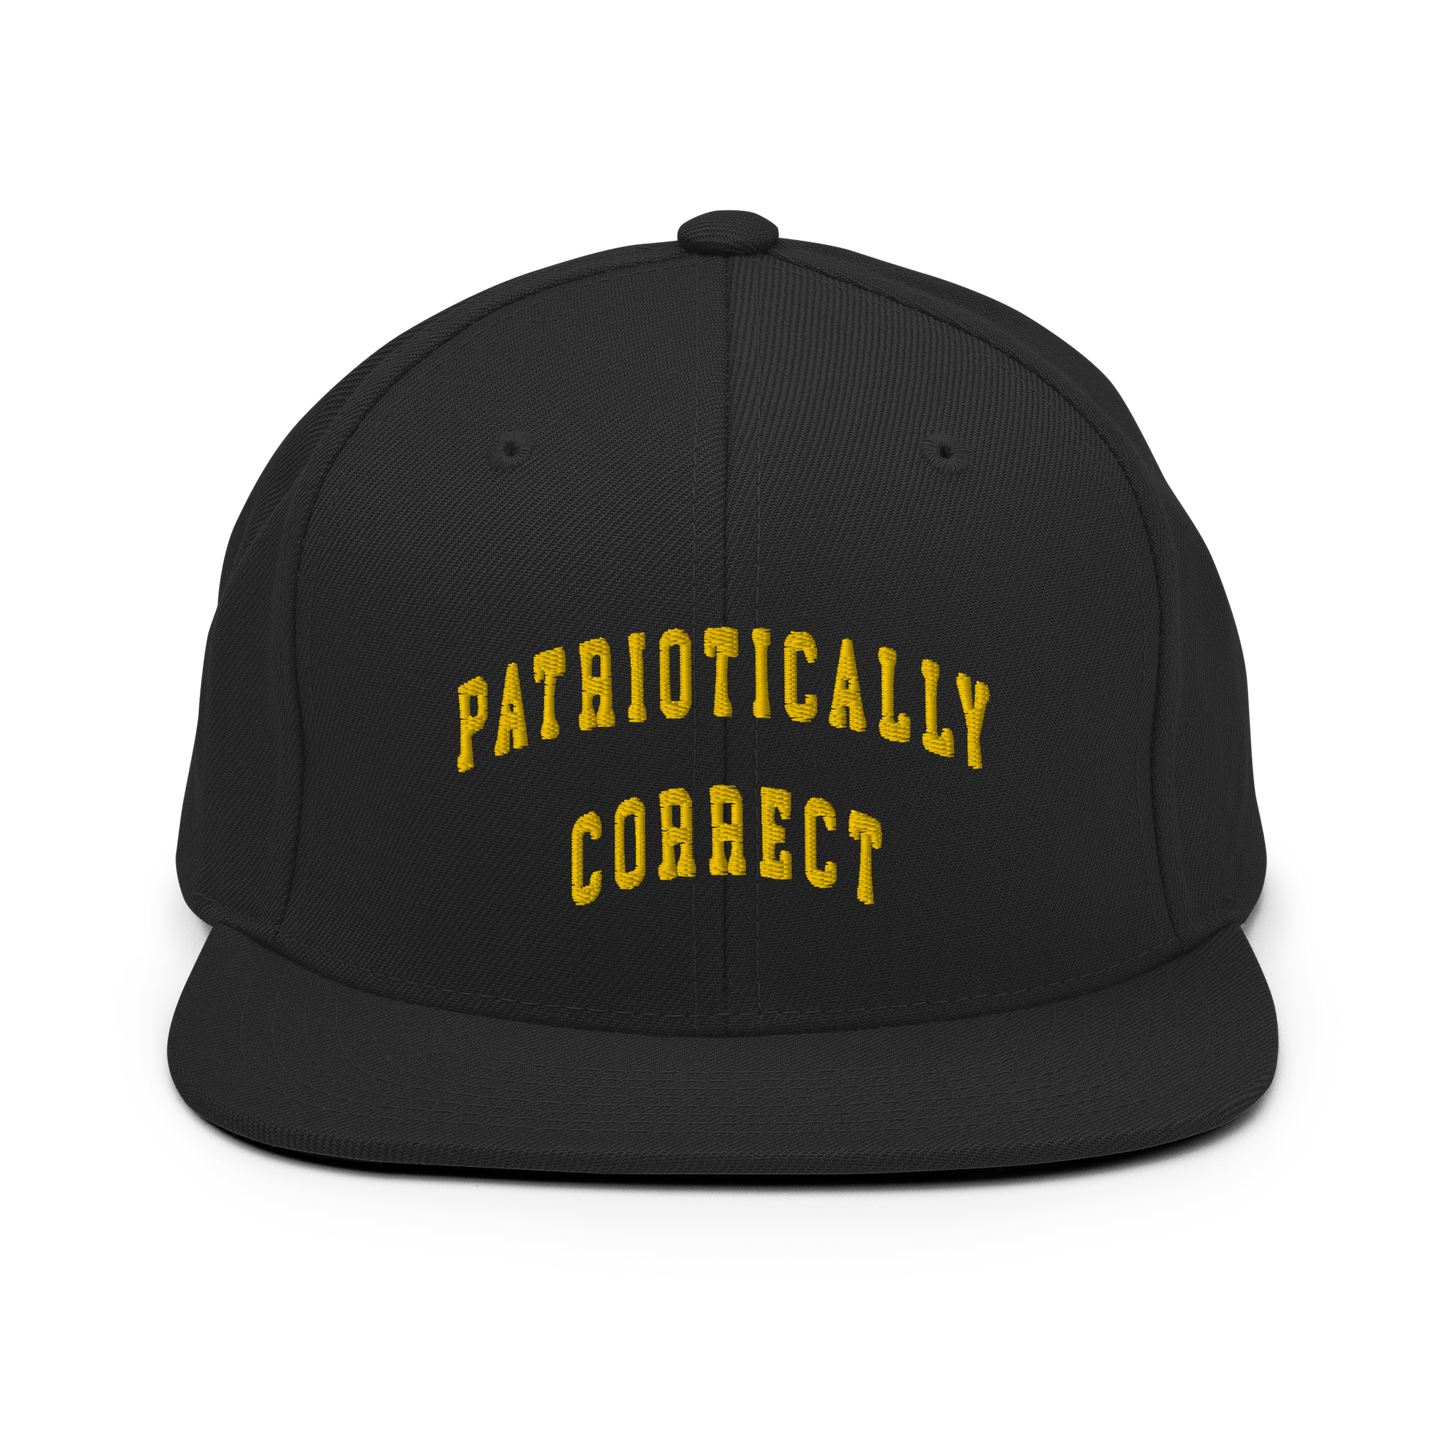 Patriotically Correct Snapback Hat